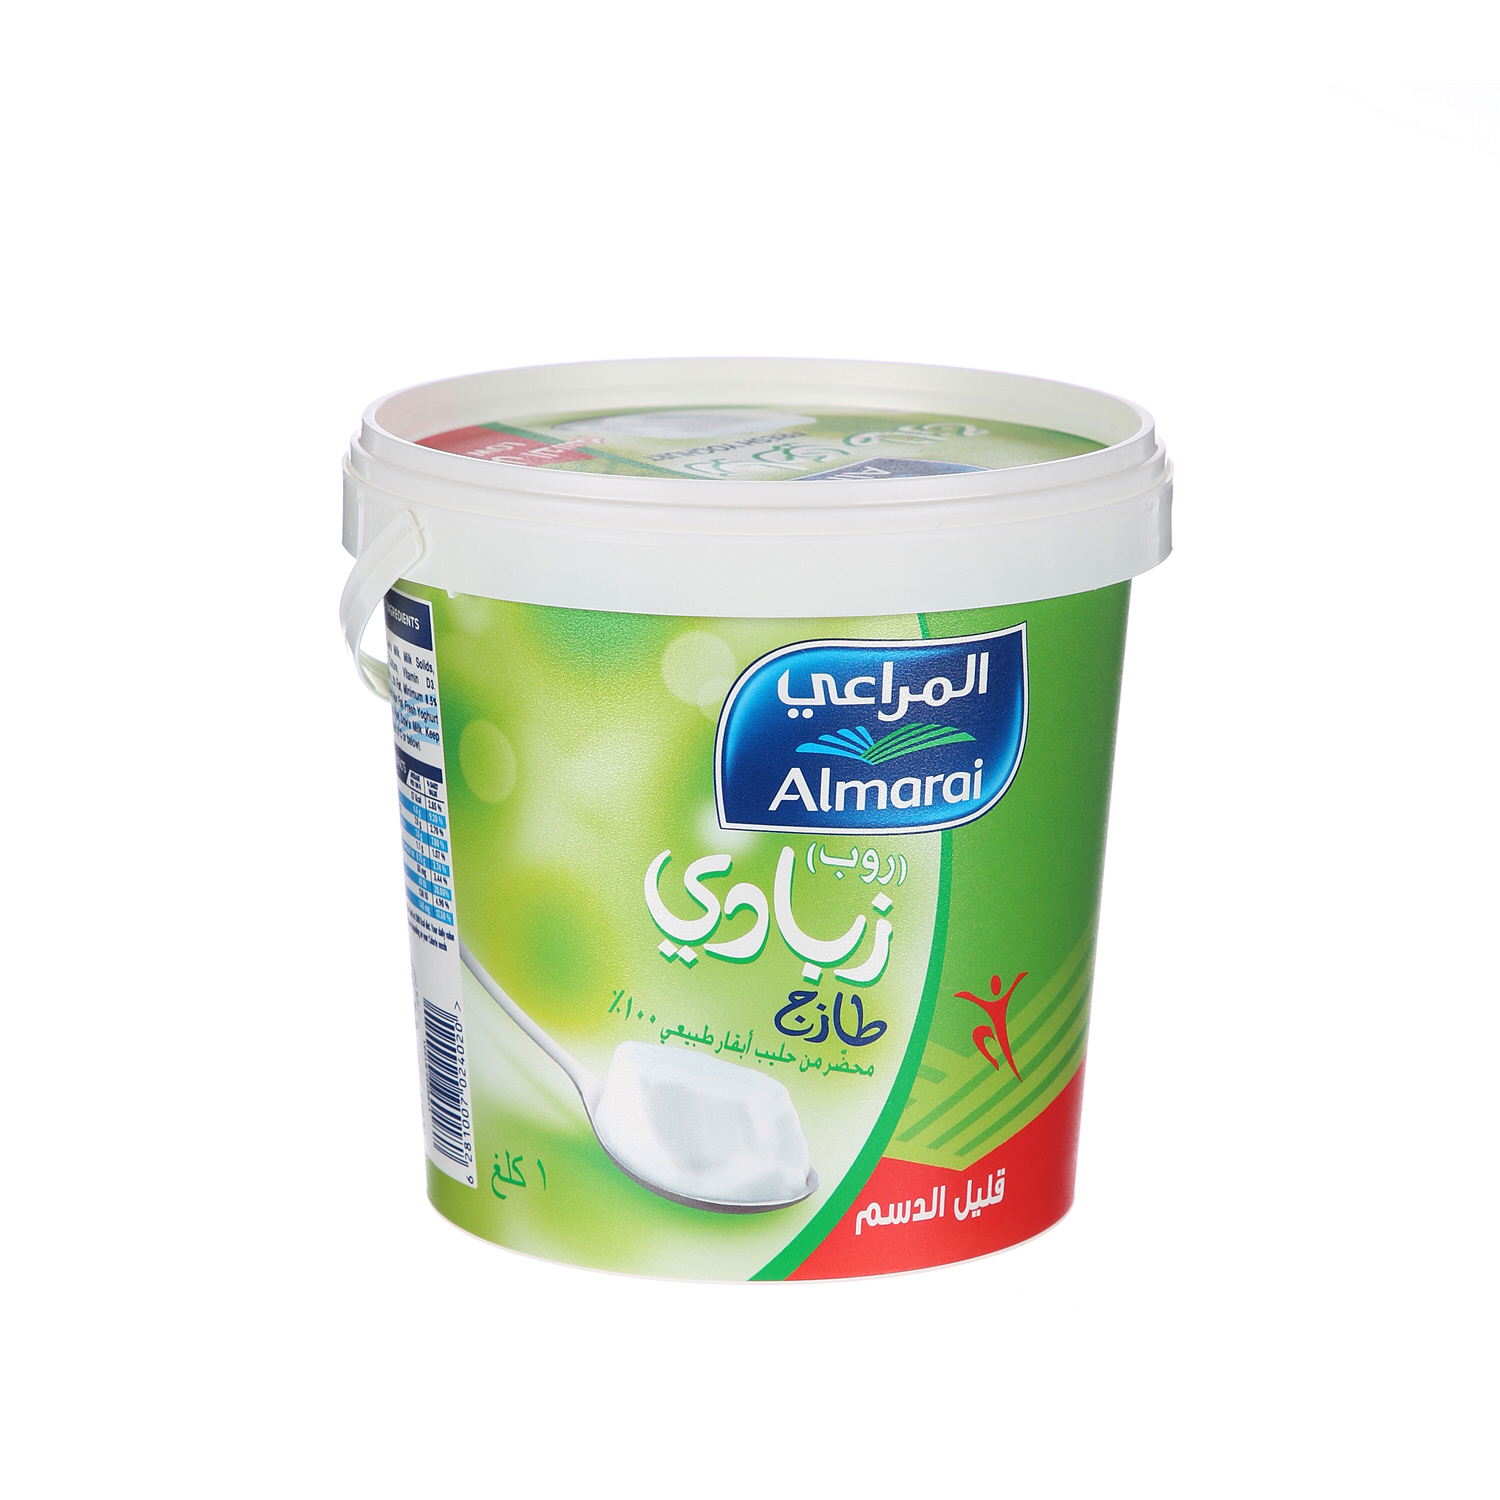 Almarai Fresh Yoghurt Low Fat 1Kg